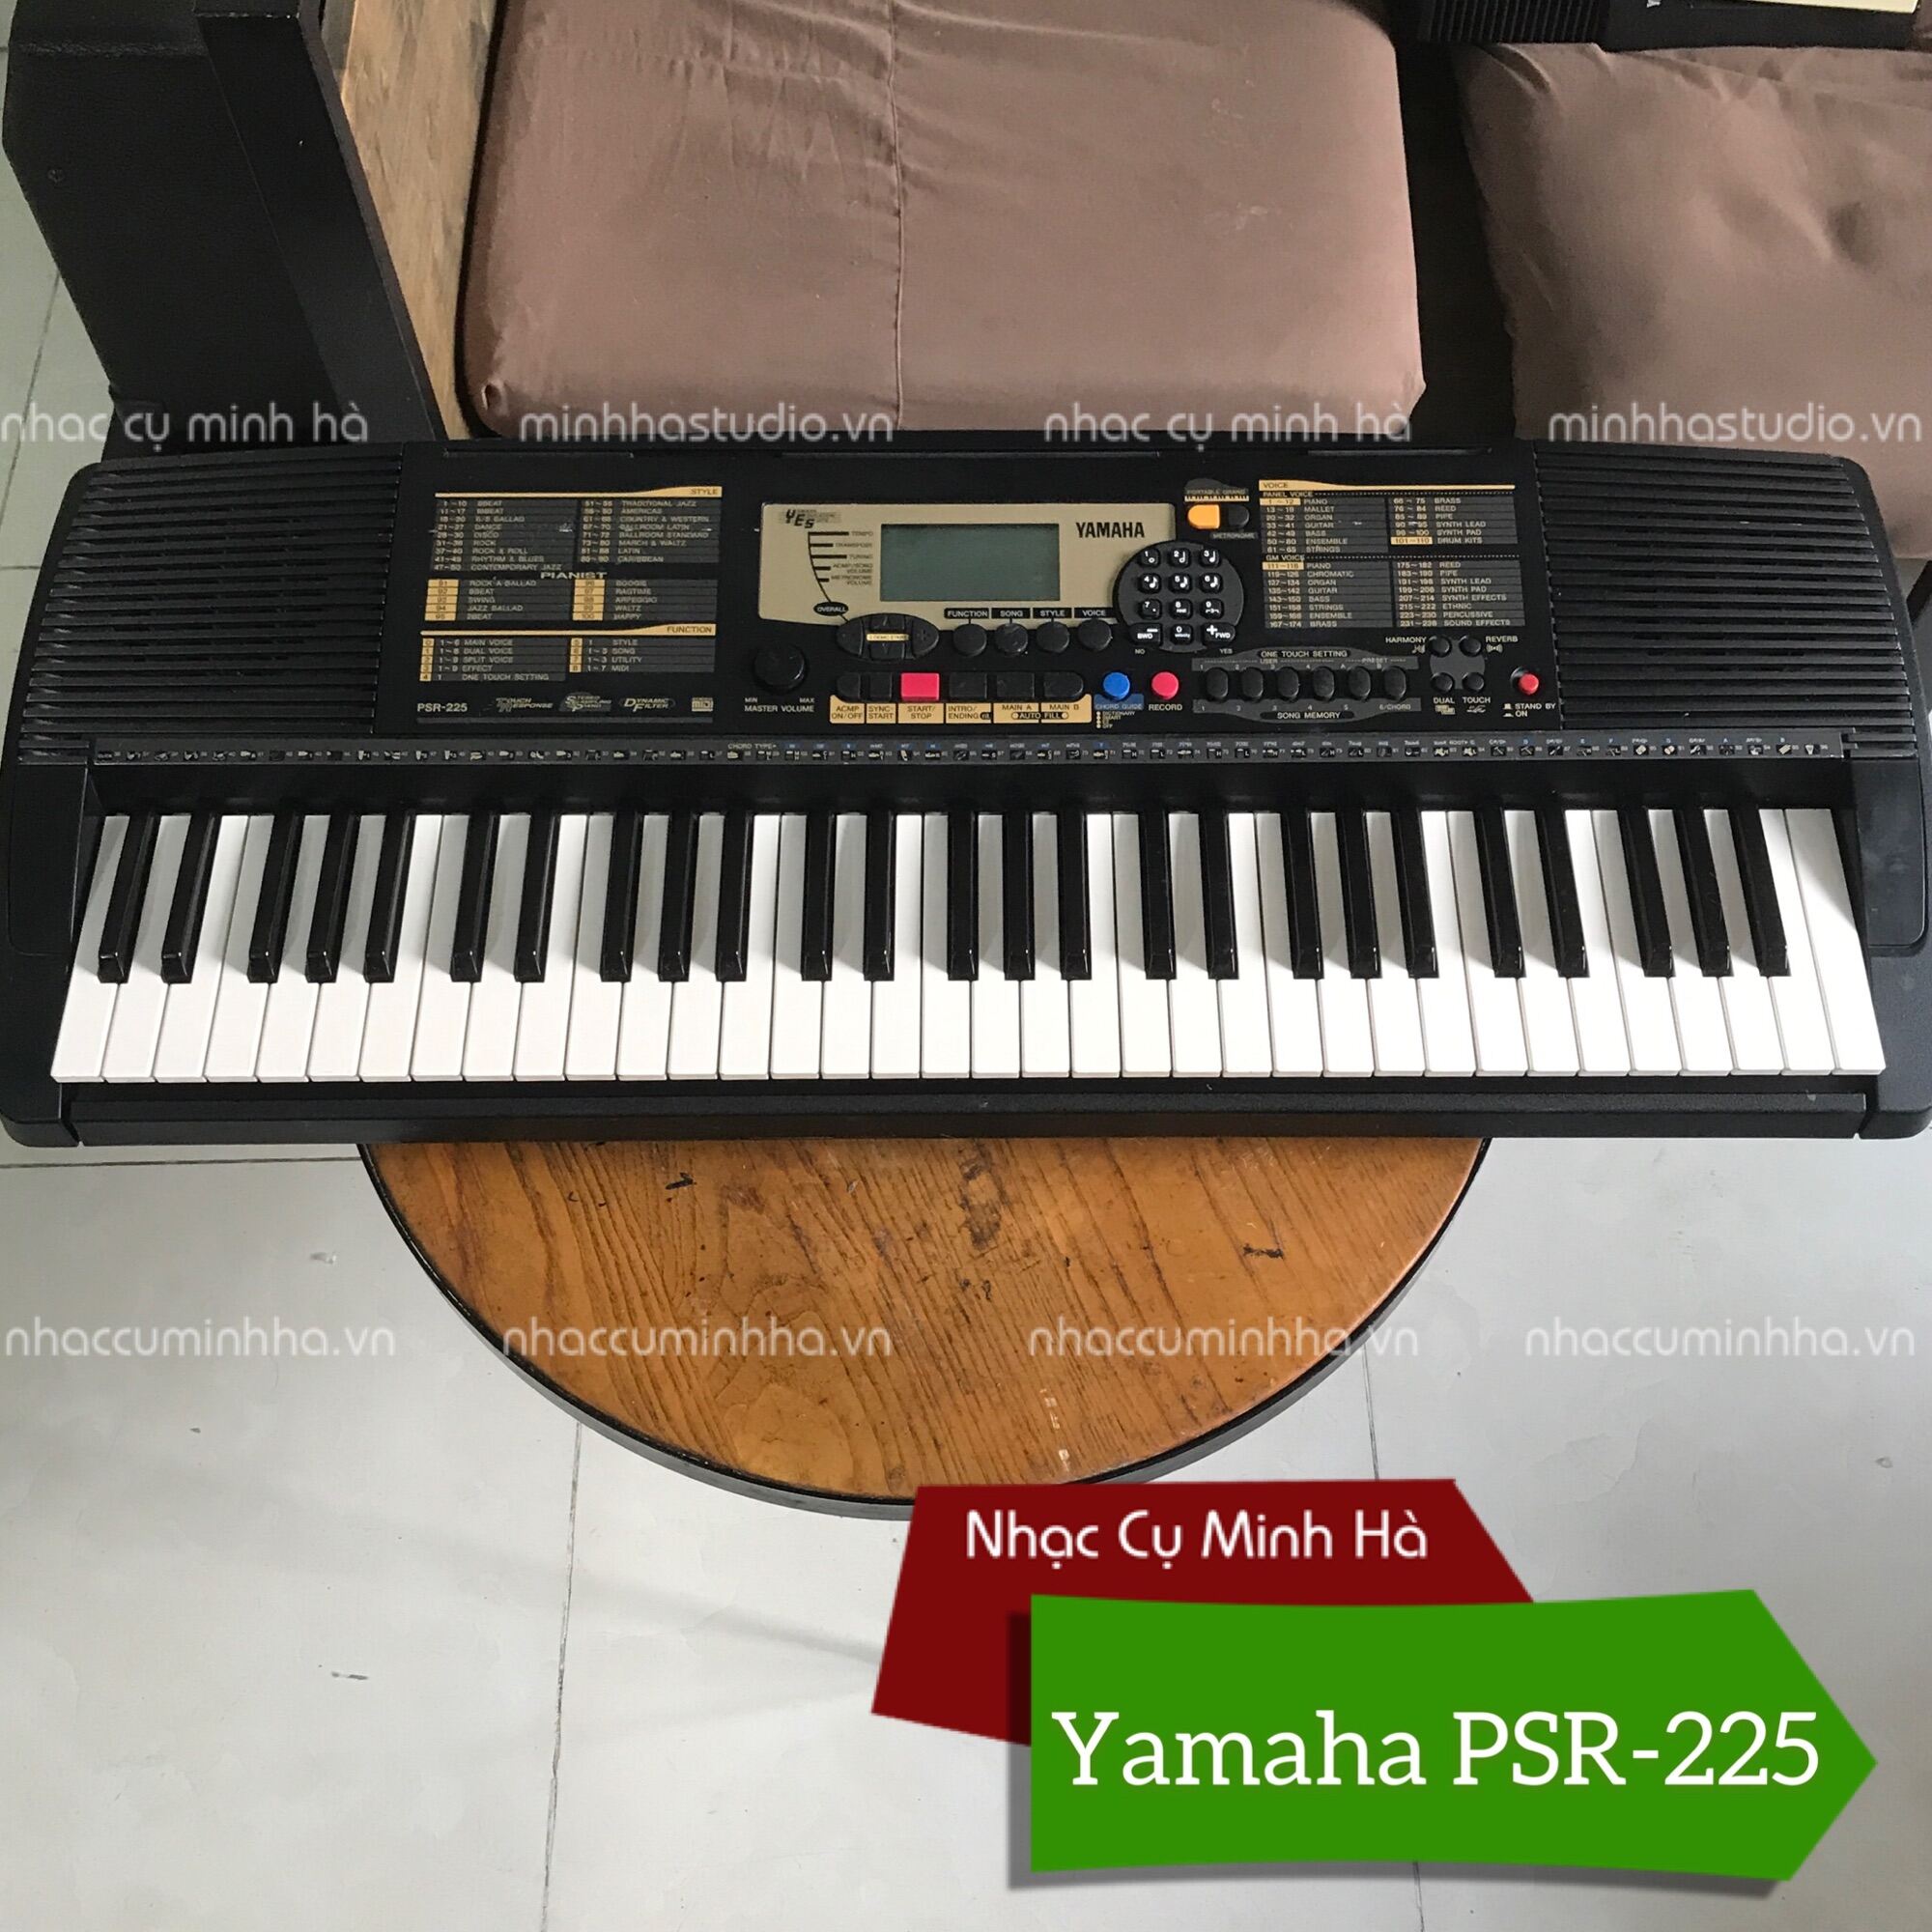 Đàn Organ Yamaha PSR-225 nội địa Nhật chính hãng, 61 phím cảm ứng, âm thanh tuyệt hay